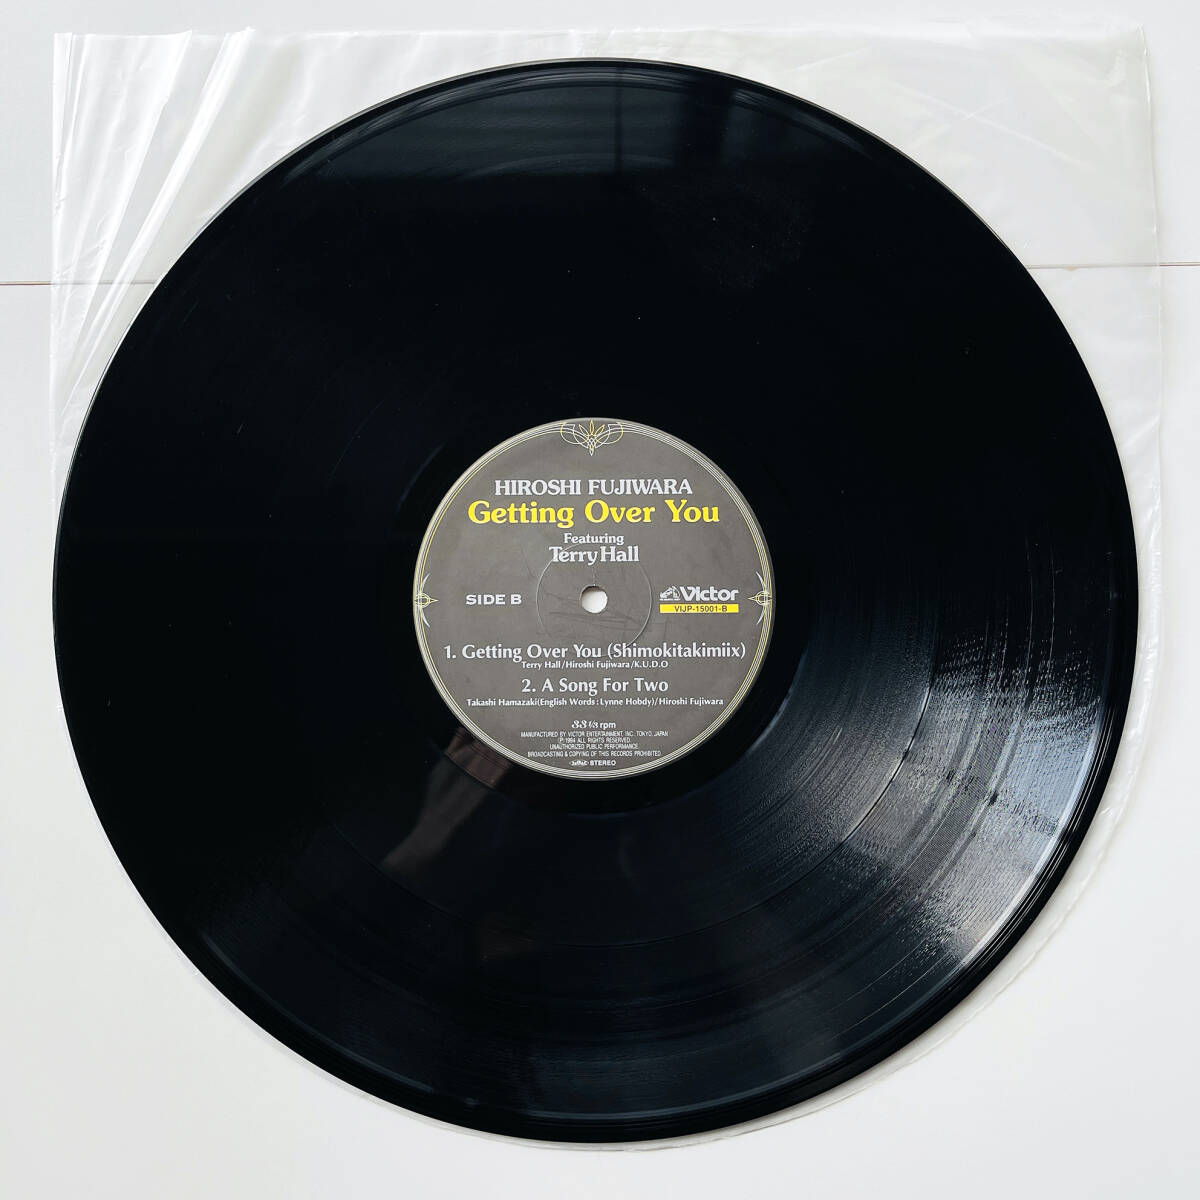  rare 12 -inch record ( Fujiwara hirosi- Getting Over You )Hiroshi Fujiwara Featuring Terry Hall